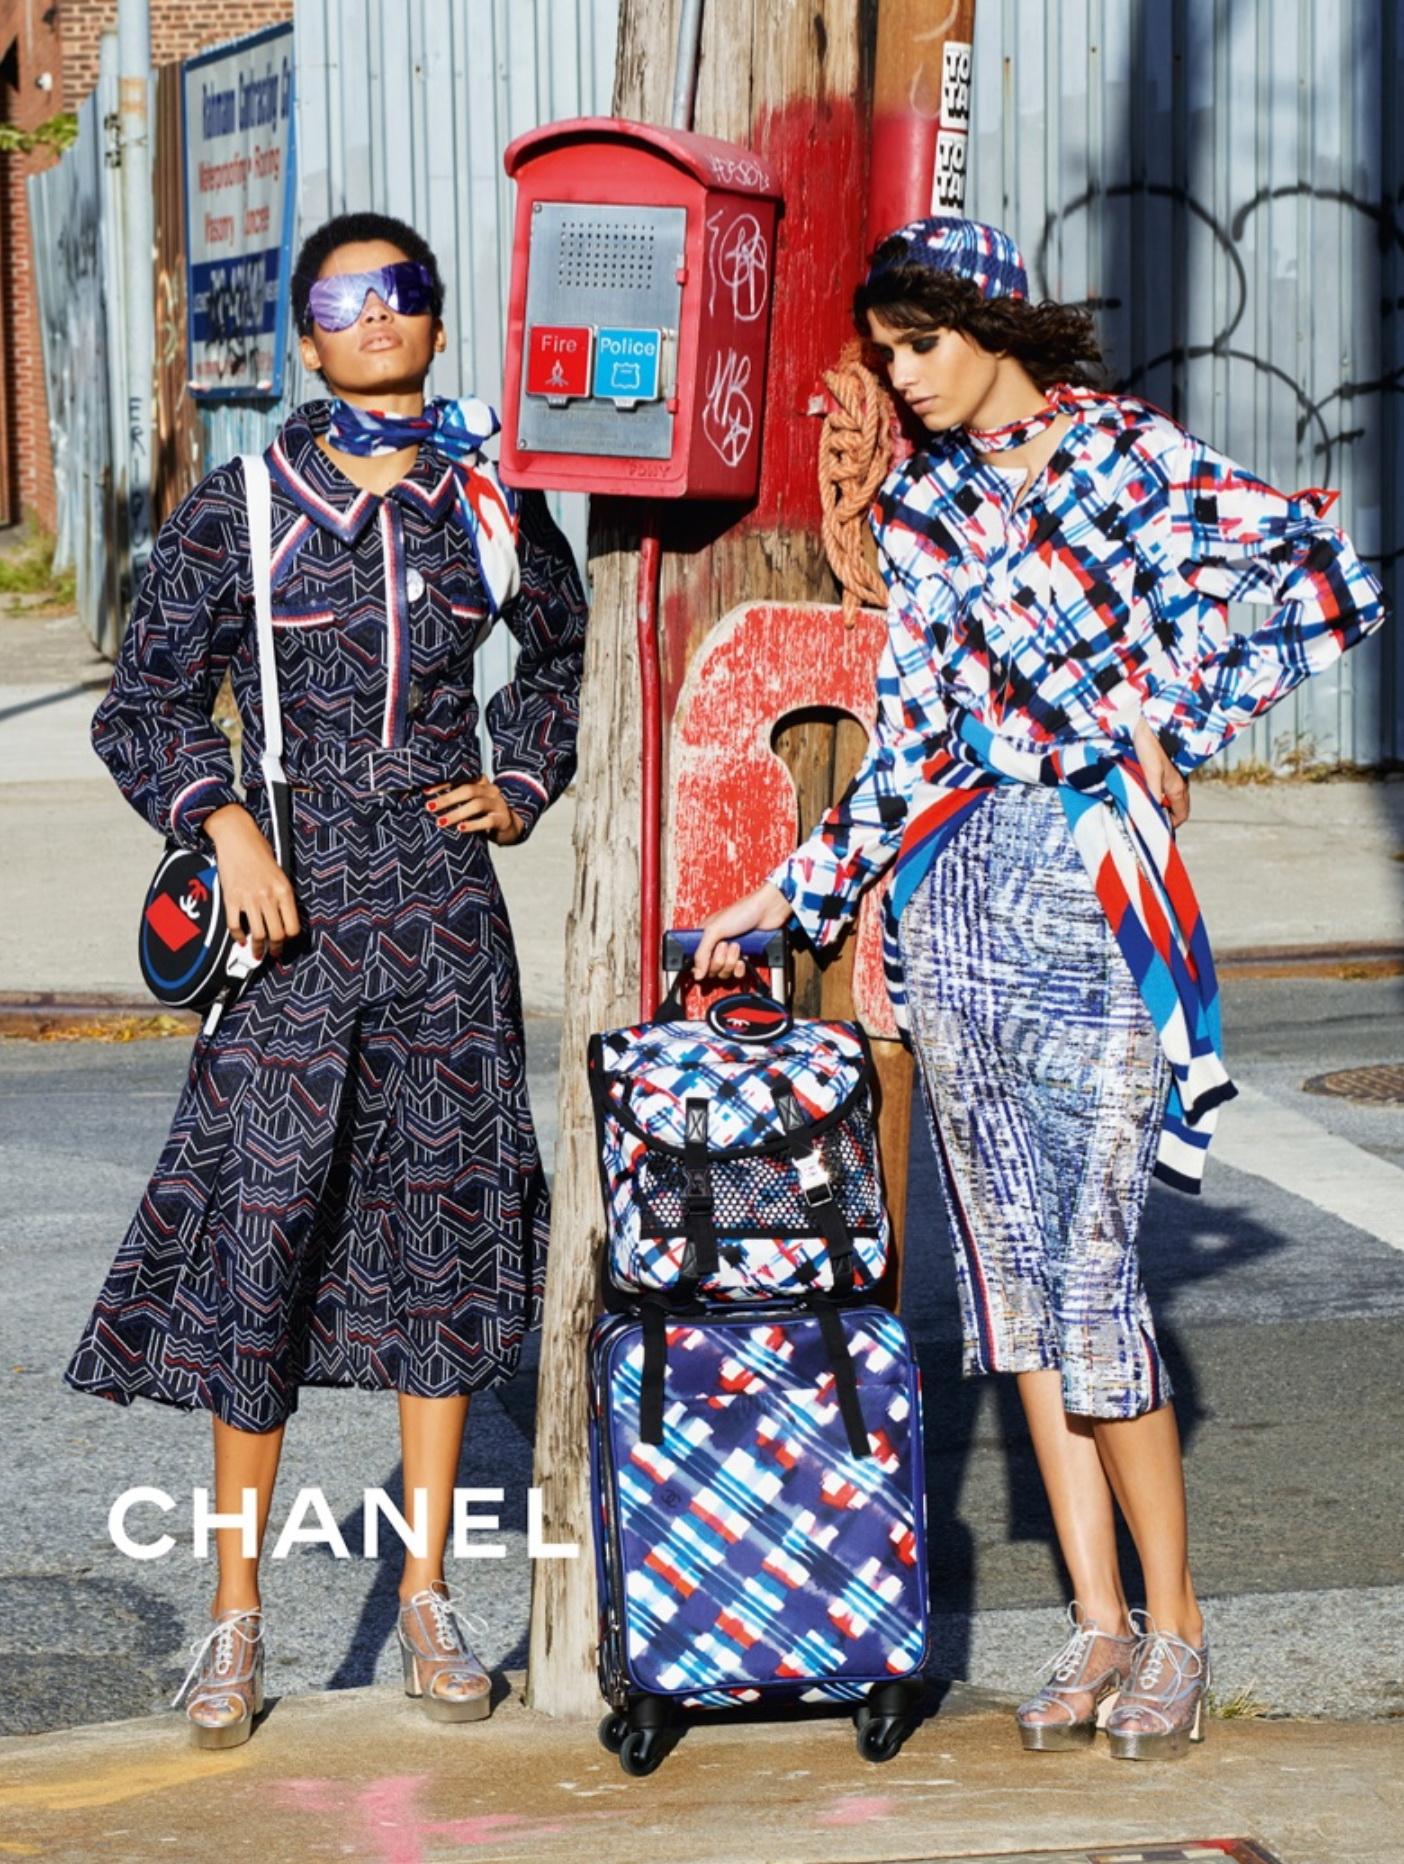 Seltener Karl Lagerfeld Chanel Frühjahr 2016 Laufsteg Anzug
Neu mit Tags
Kendall Jenner trug dieses Modell bei der ikonischen 